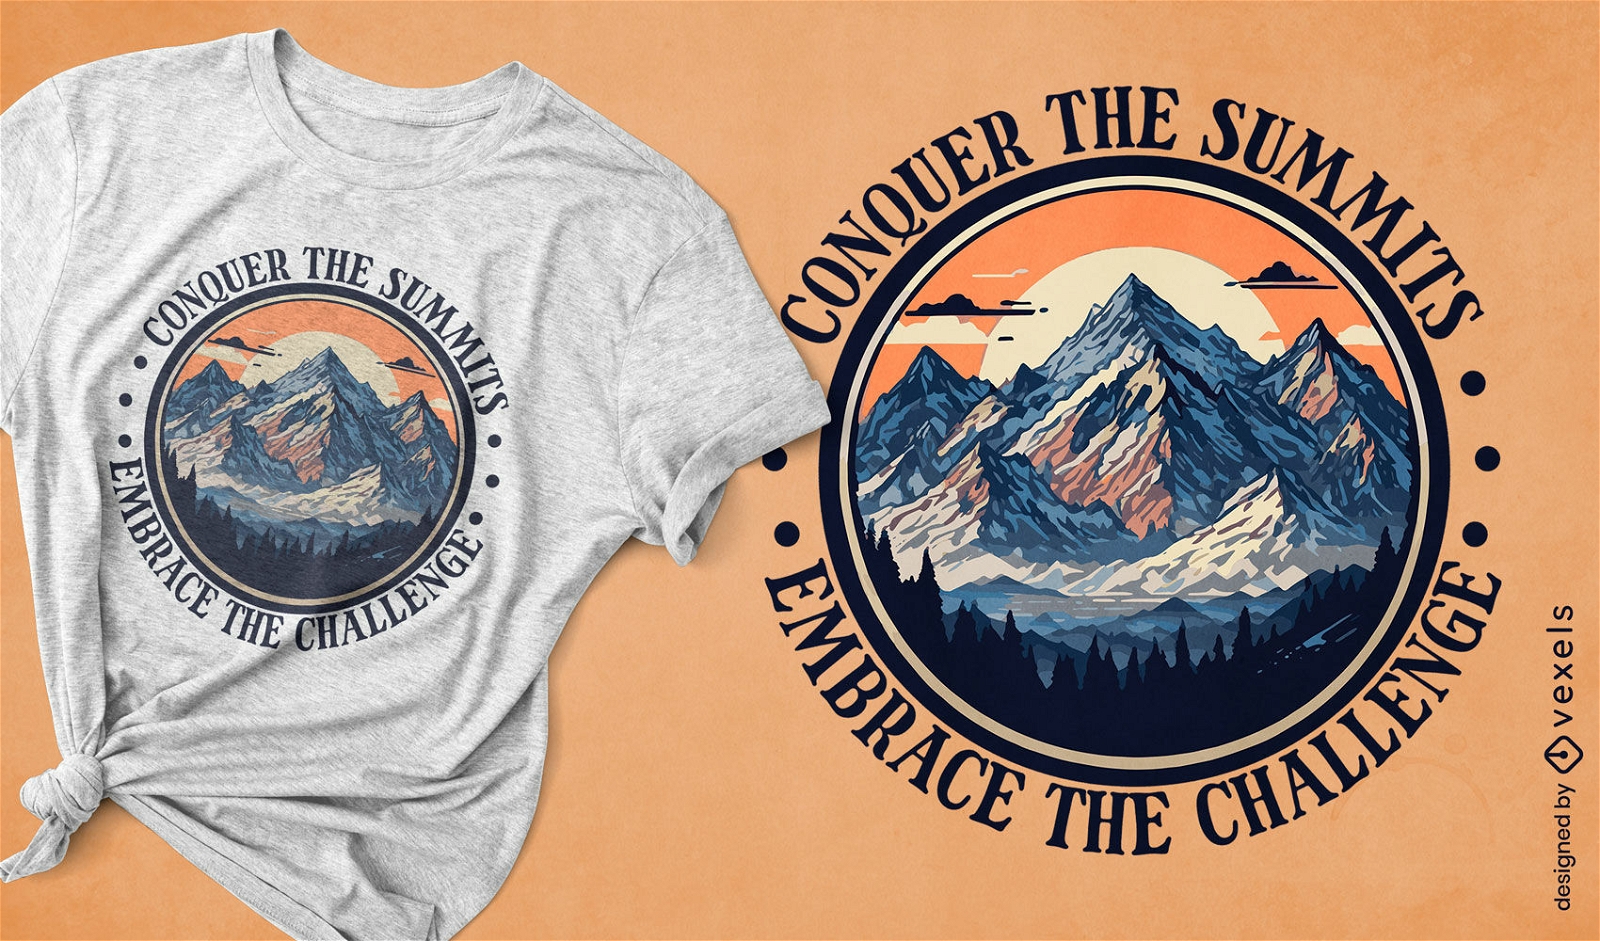 Dise?o de camiseta vintage de aventura en la monta?a.